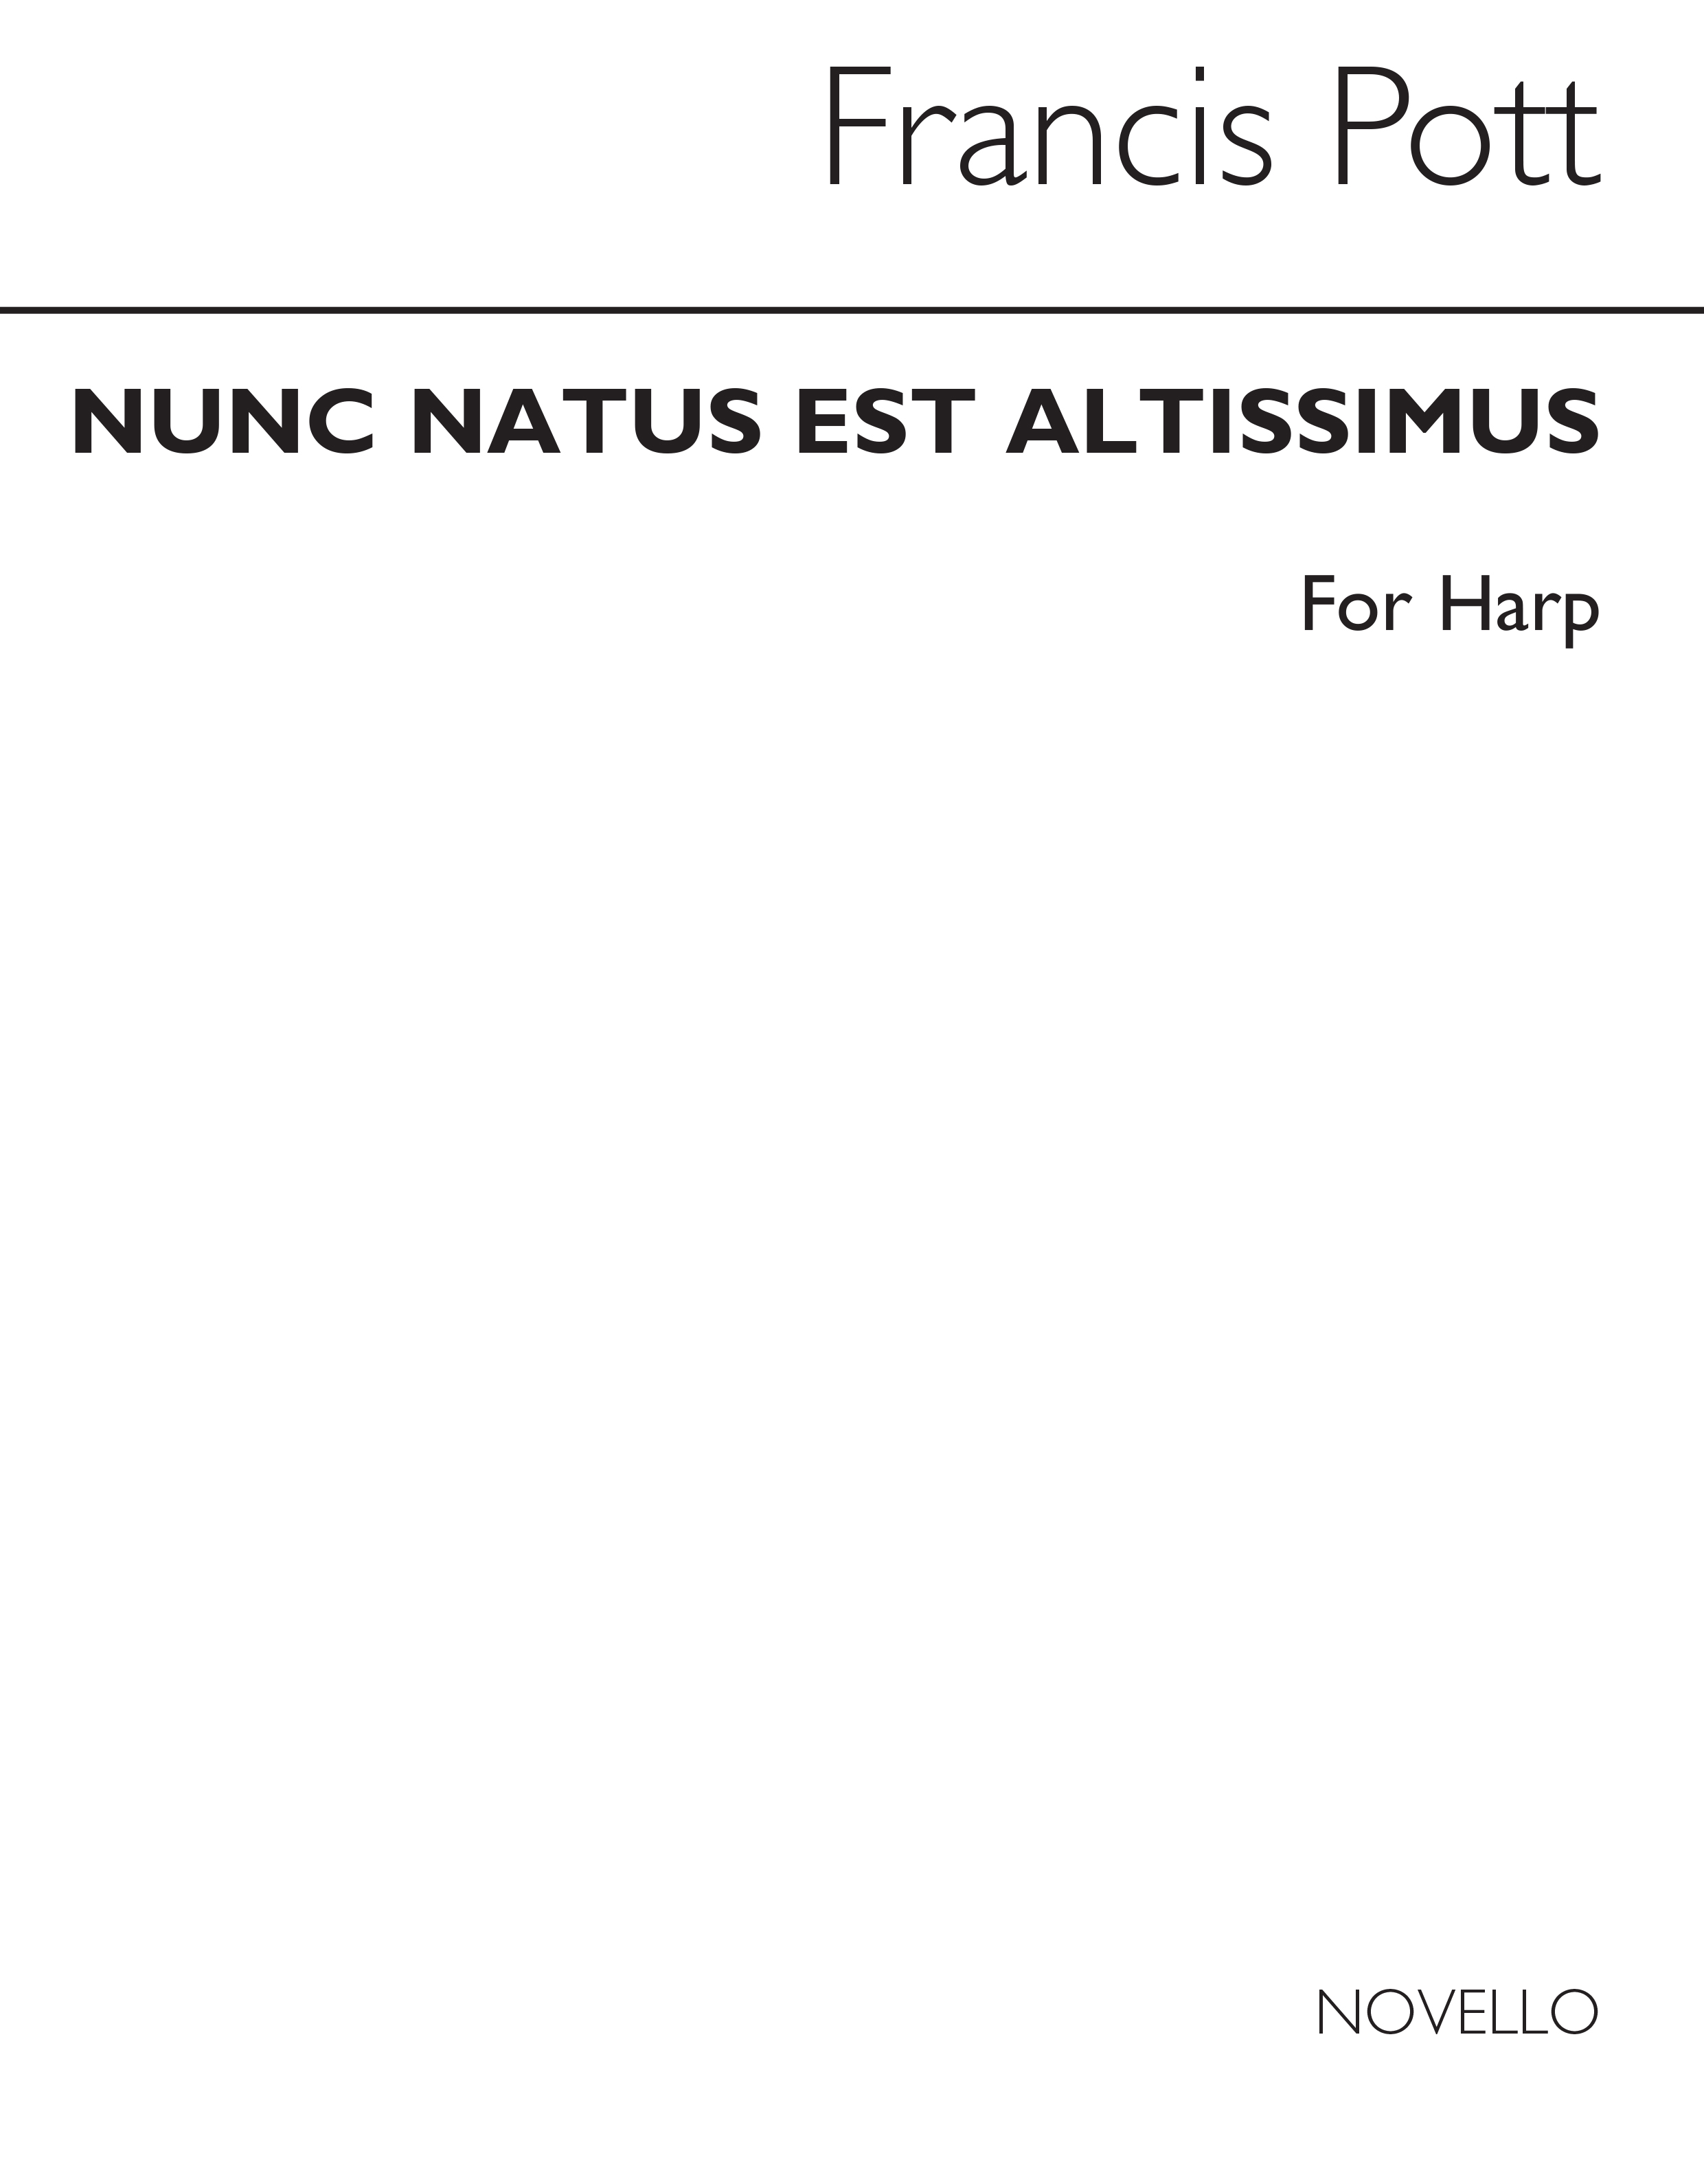 Francis Pott: Nunc Natus Est Altissimus (Harp Part)